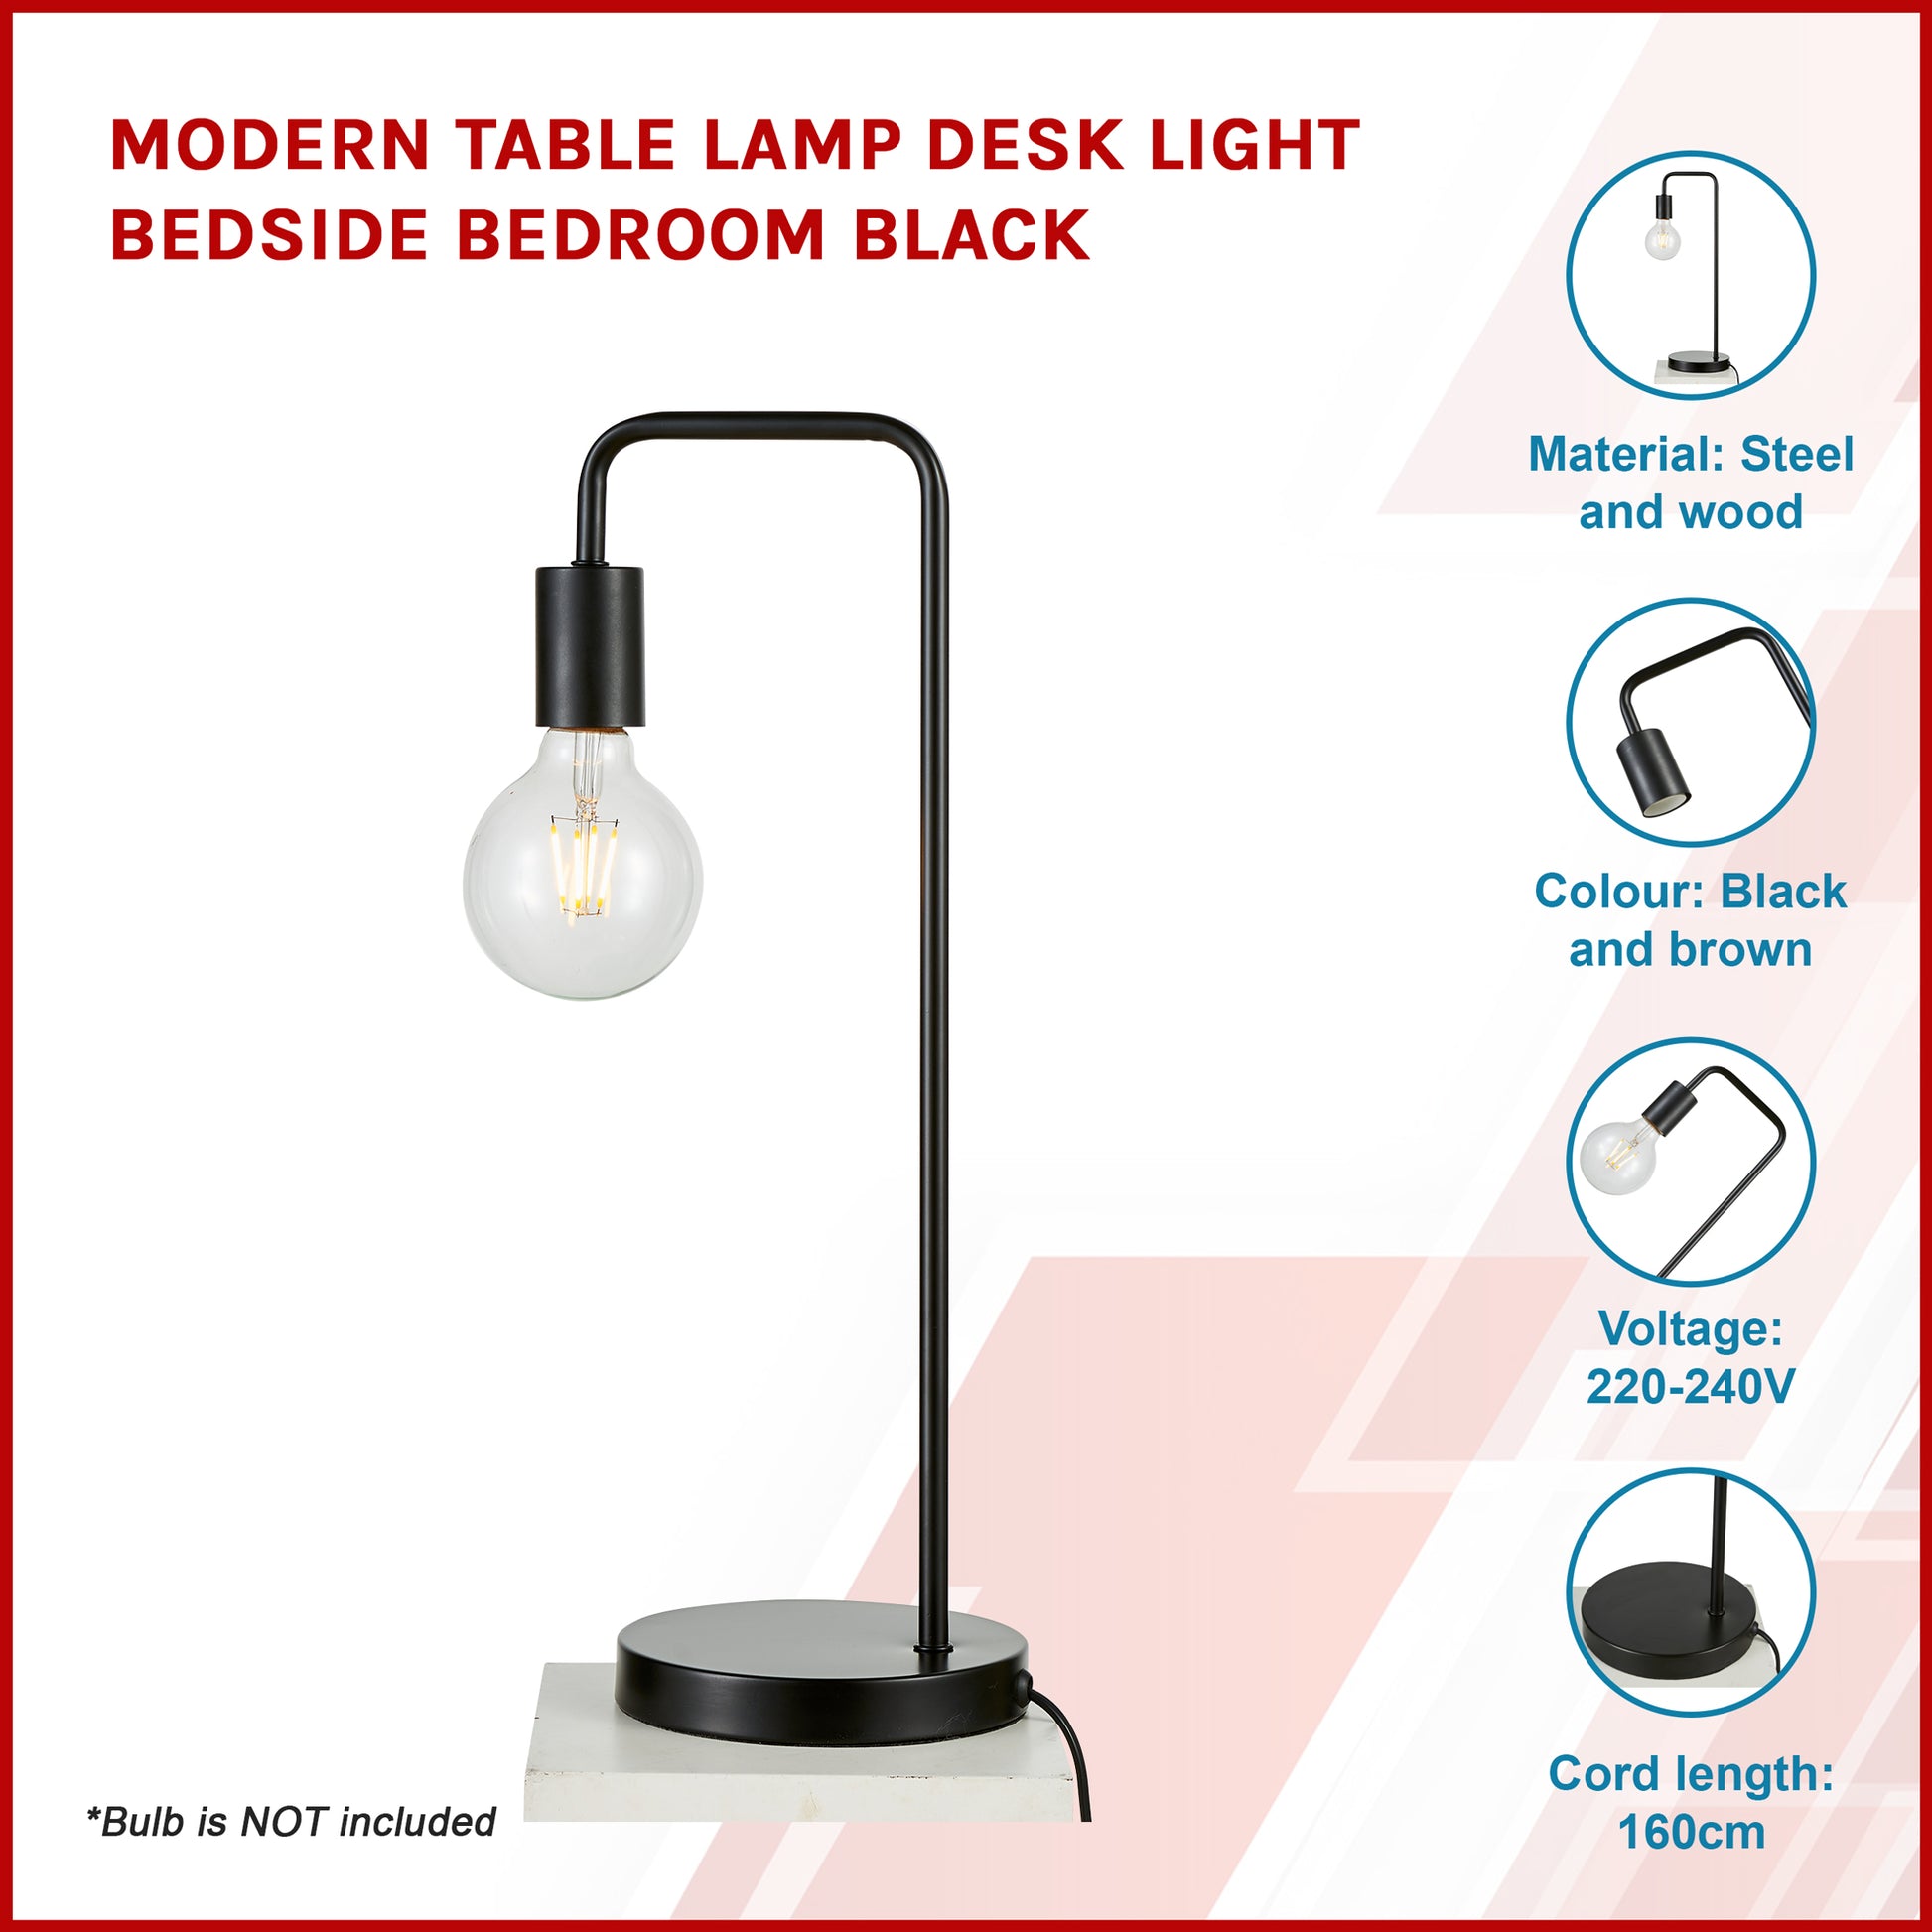 Modern Table lamp Desk Light Bedside Bedroom Black - image6